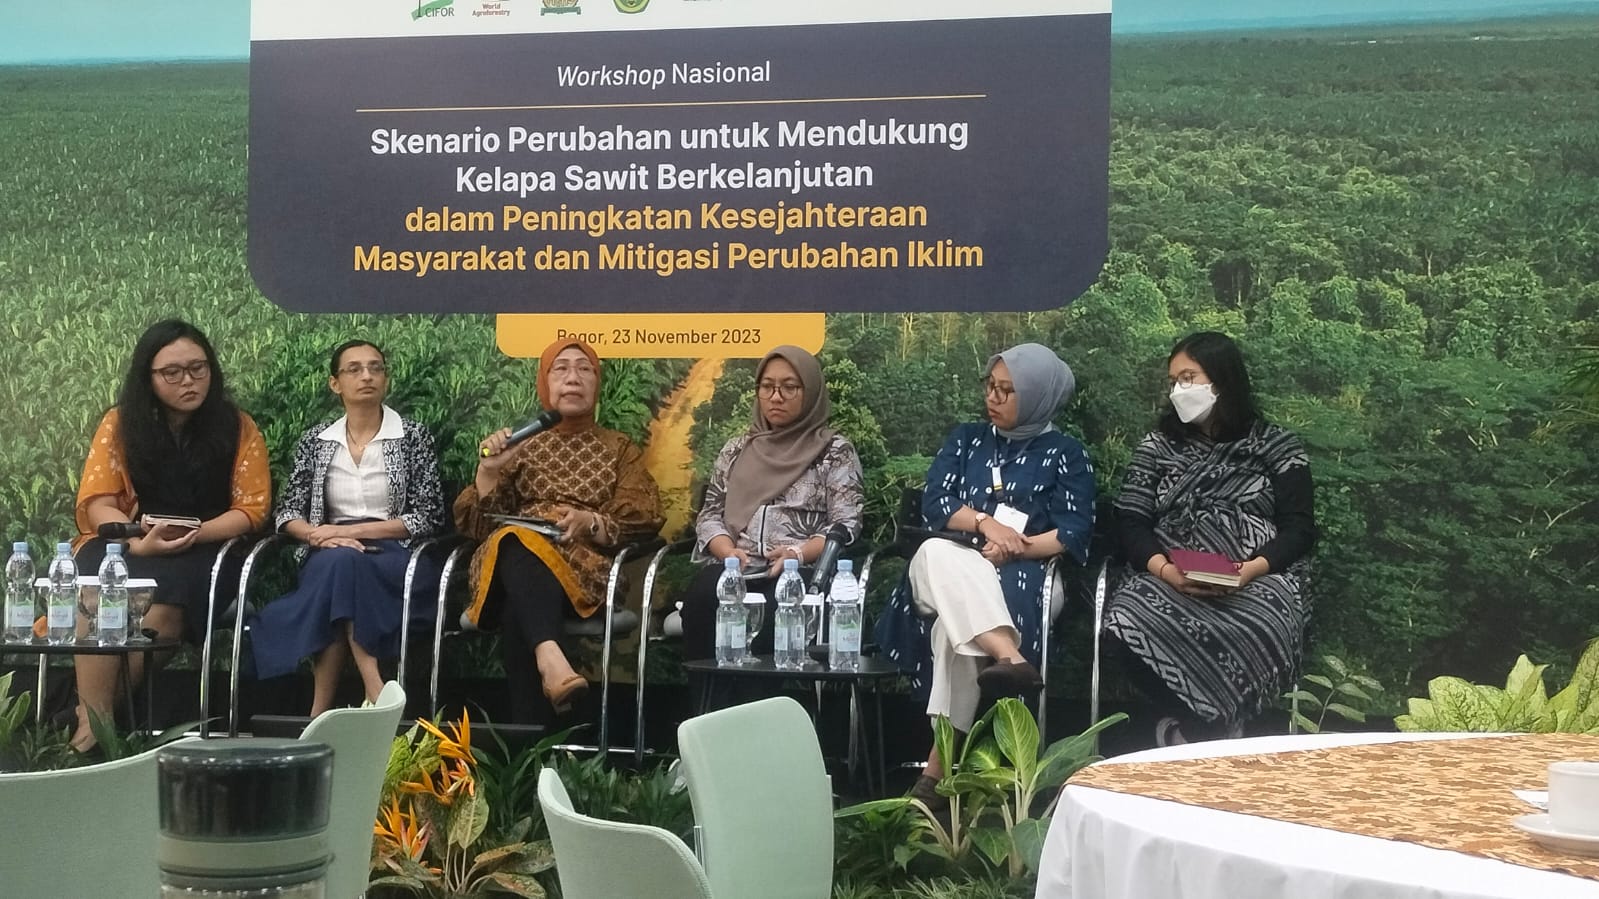 CIFOR - ICRAF Kembali Menggelar Workshop “Perluasan Pendekatan Yurisdiksi pada Sektor Kelapa Sawit di Indonesia" 2023